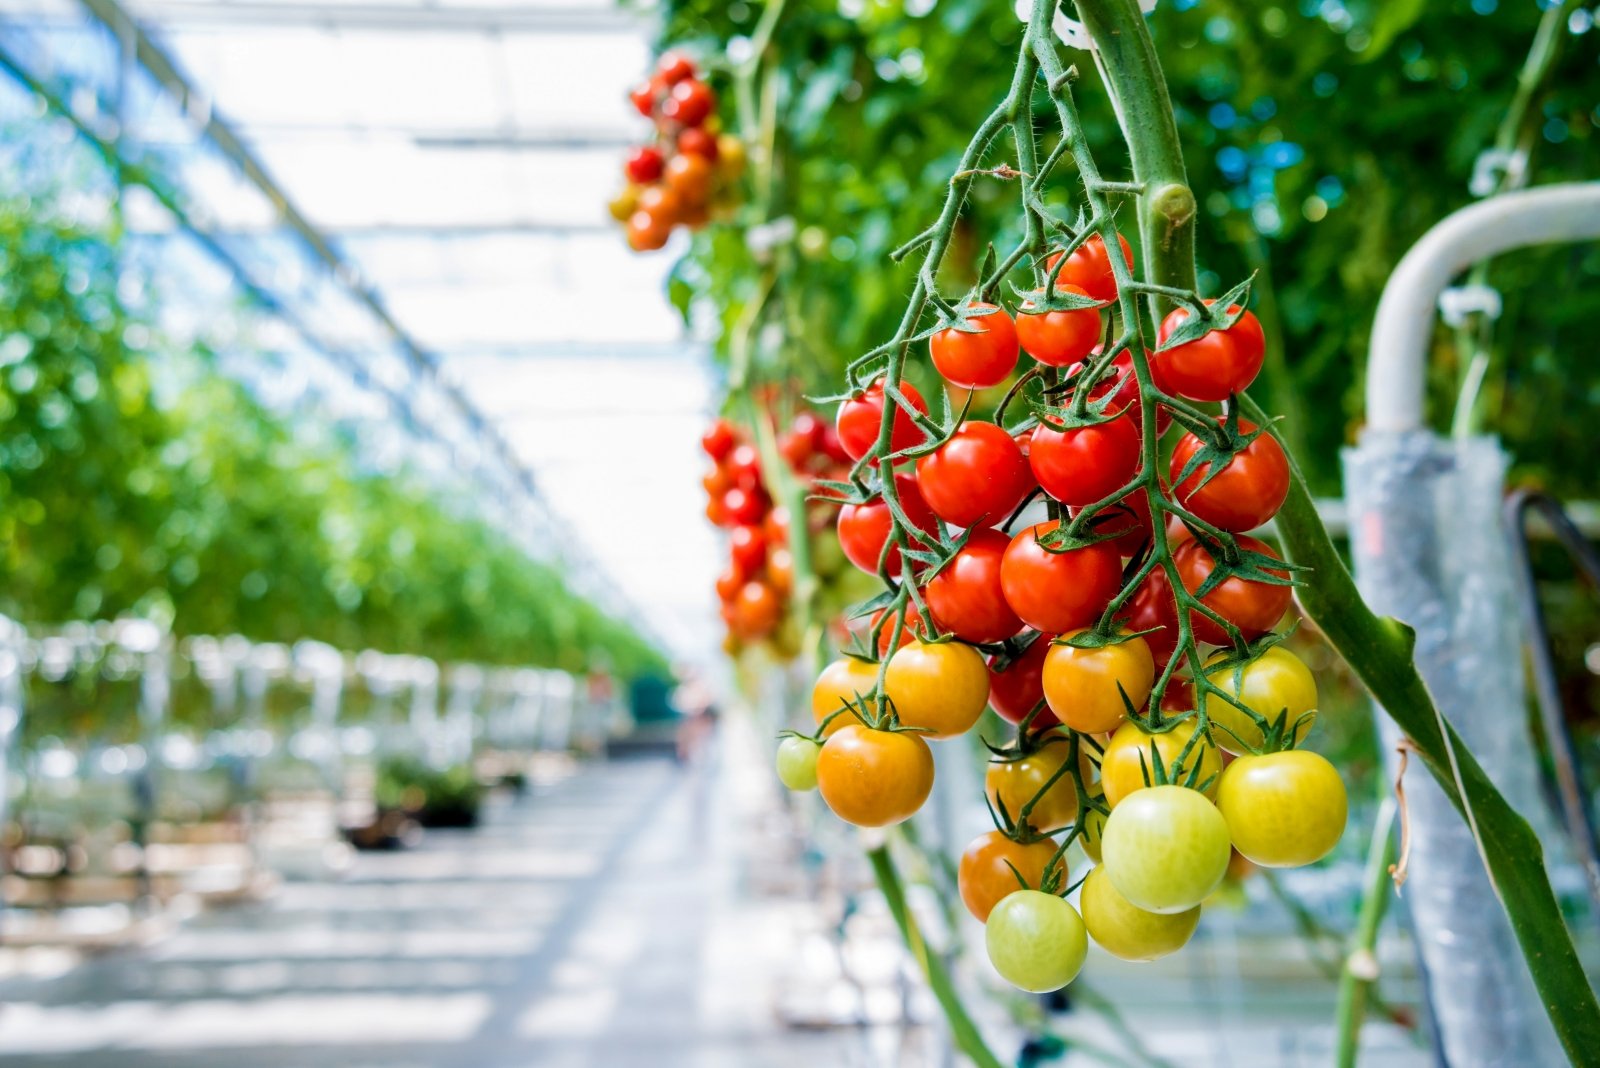 suitcase Sparkle cast Geriausios hibridinių pomidorų veislės, tinkančios auginti šiltnamyje -  DELFI Agro